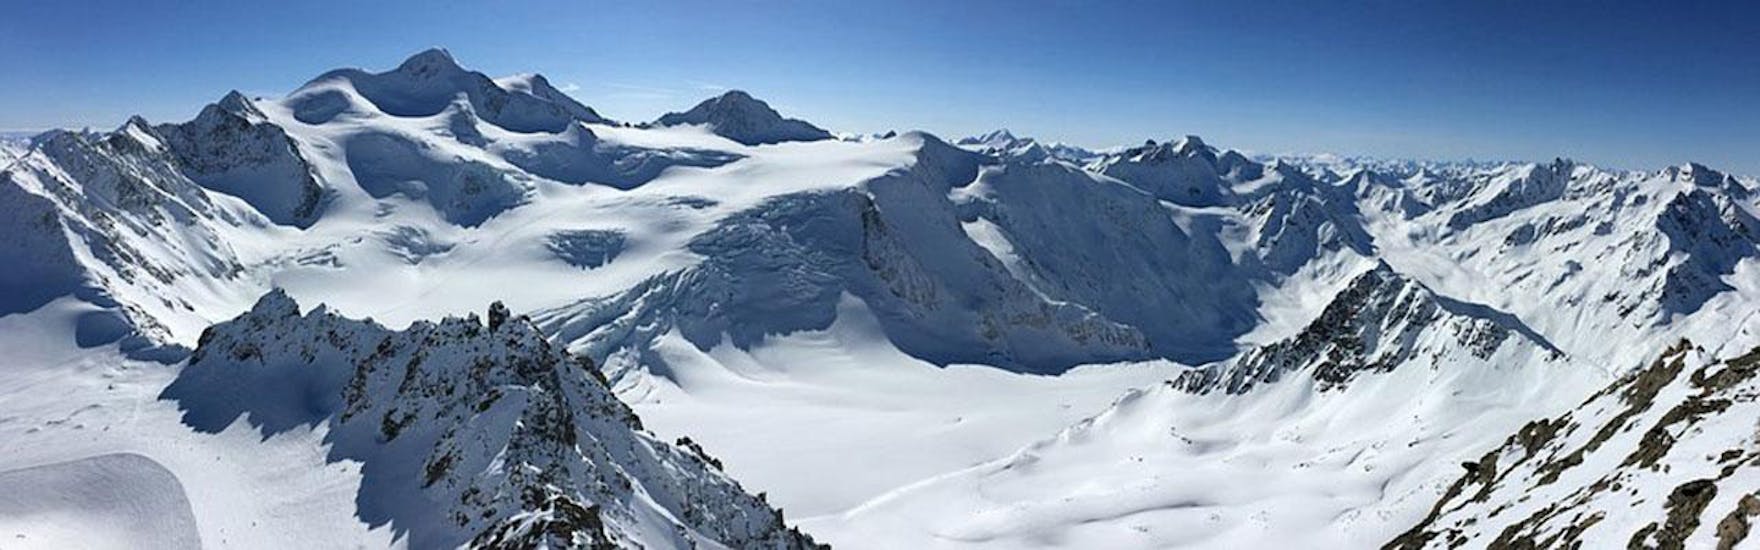 Ein Panoramablick über die schneebedeckten Berge des Skigebiets Arosa - Lenzerheide in den Schweizer Alpen, wo die ACT Sports Skischule Arosa private Skikurse für Kinder und Erwachsene anbietet.